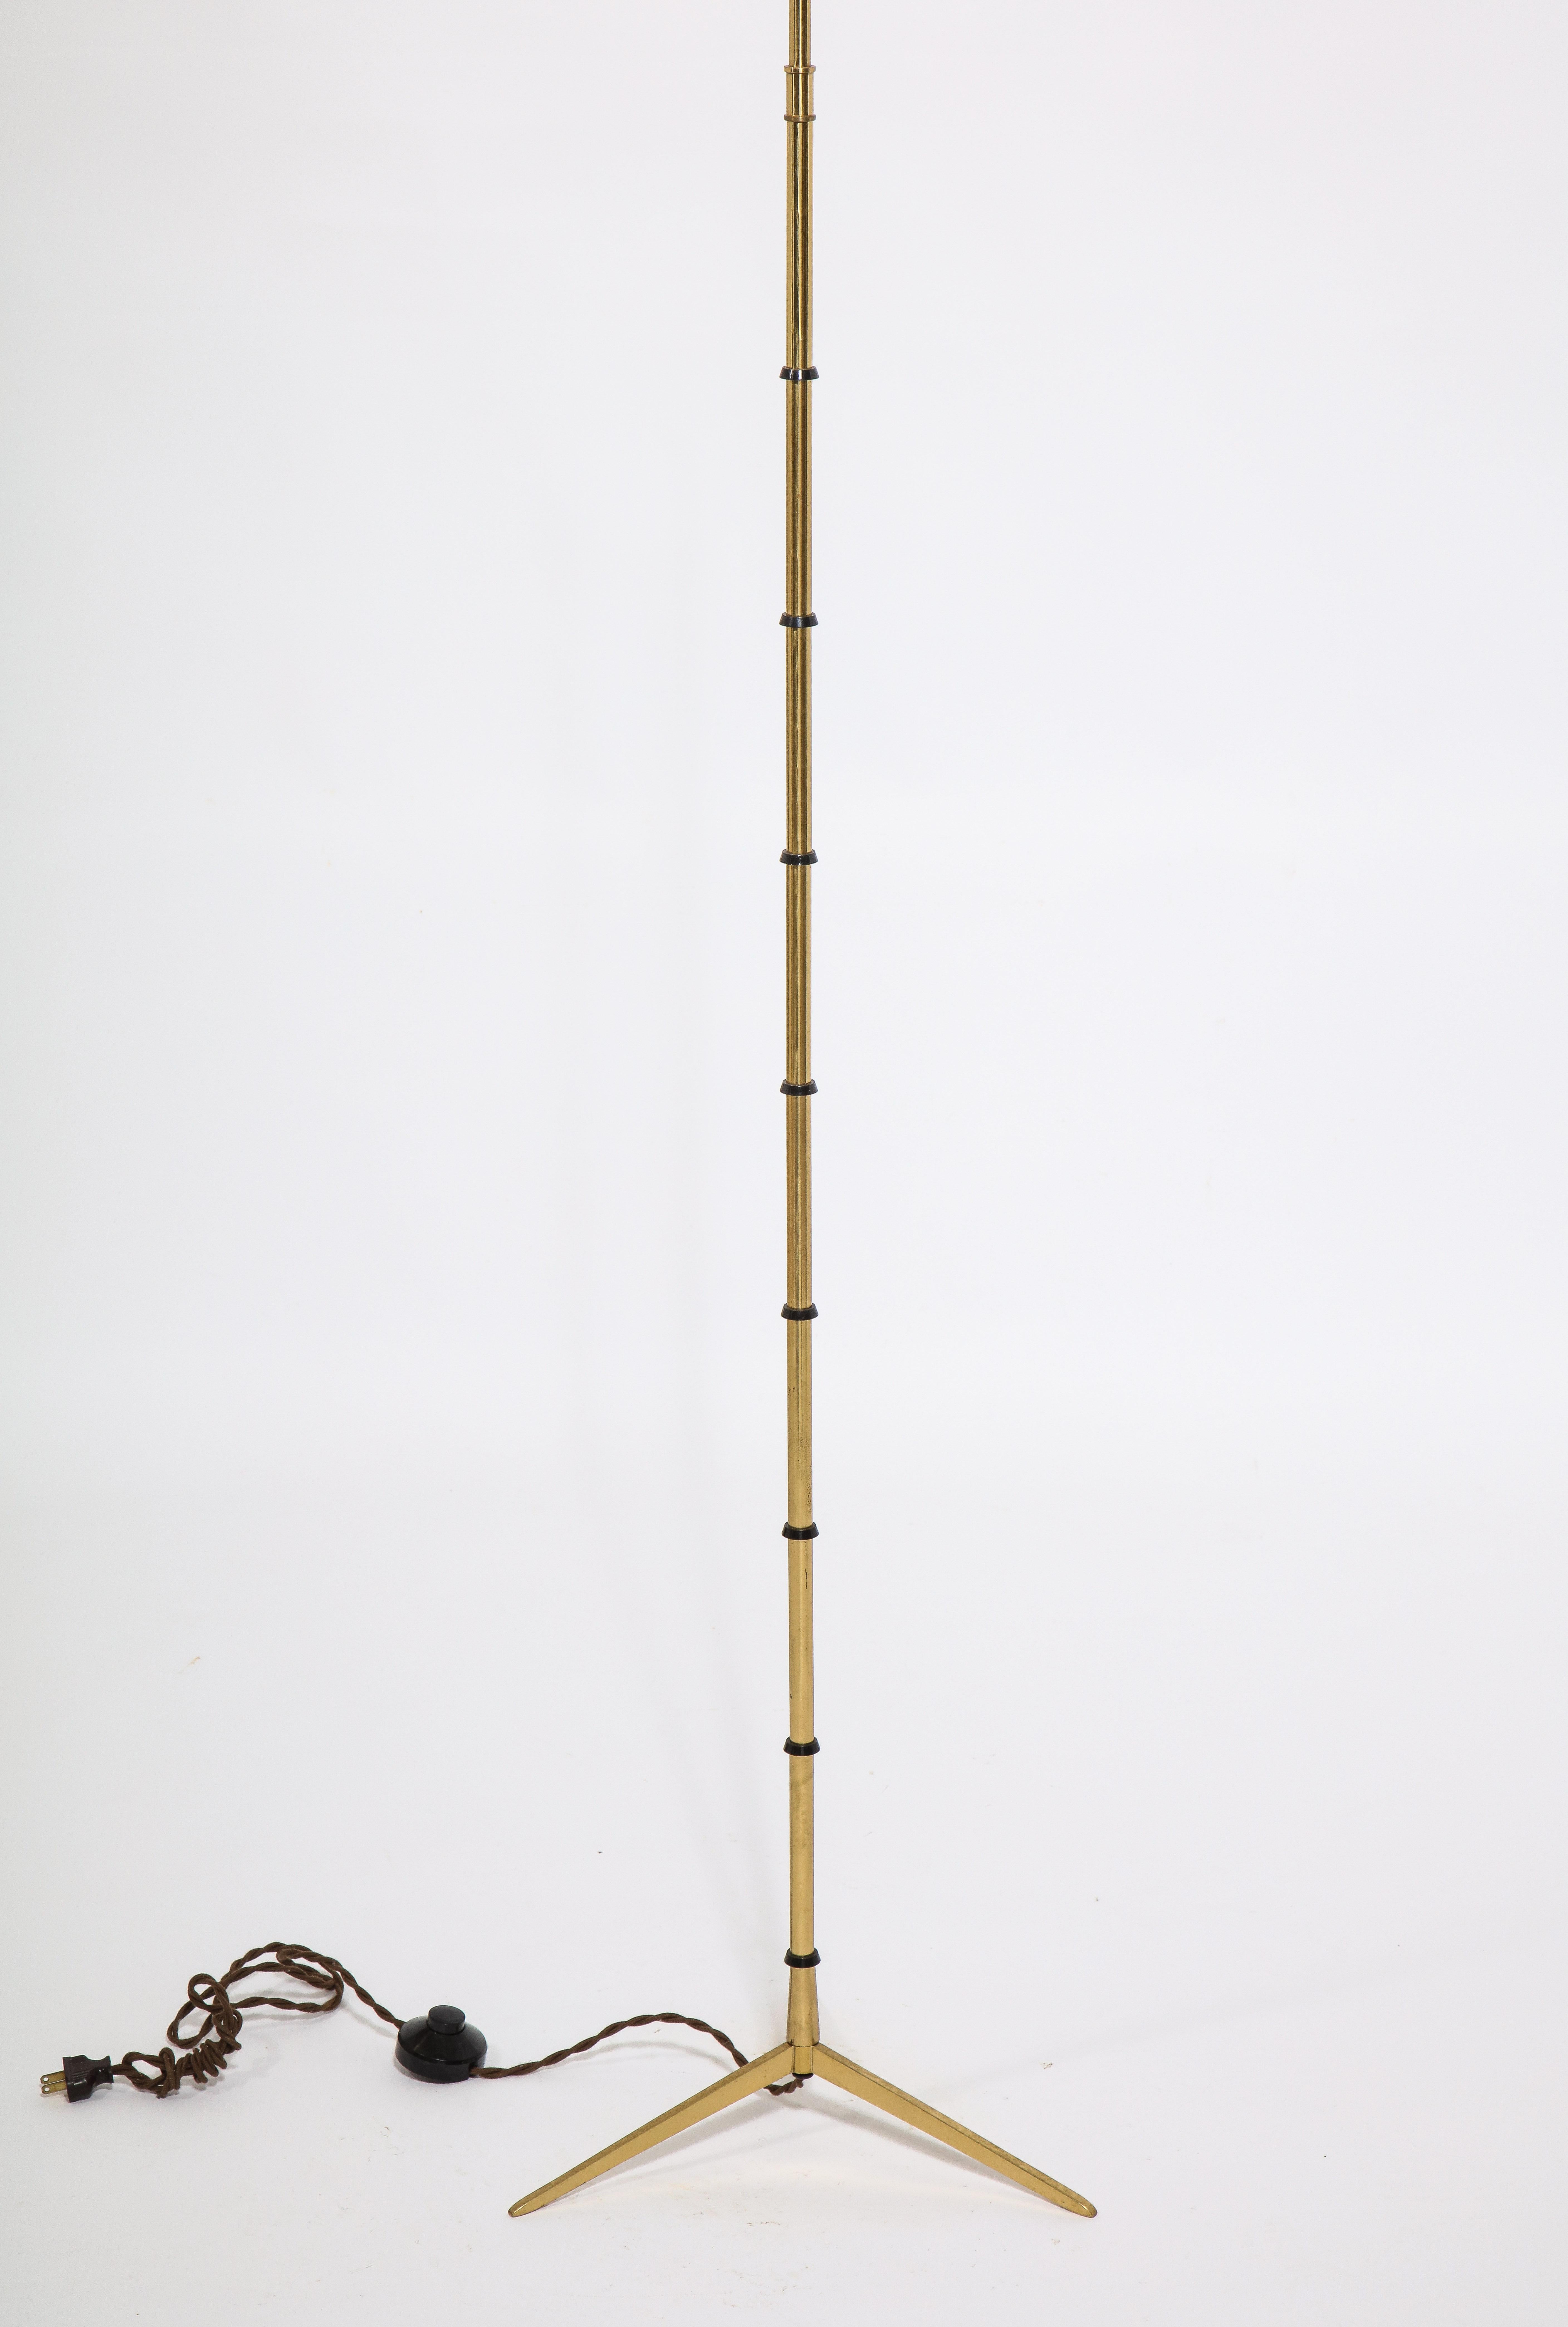 Lampadaire tripode en laiton à la manière de Jansen. La tige est un faux bambou stylisé avec des anneaux de différentes patines. Les ombres sont utilisées à des fins photographiques.